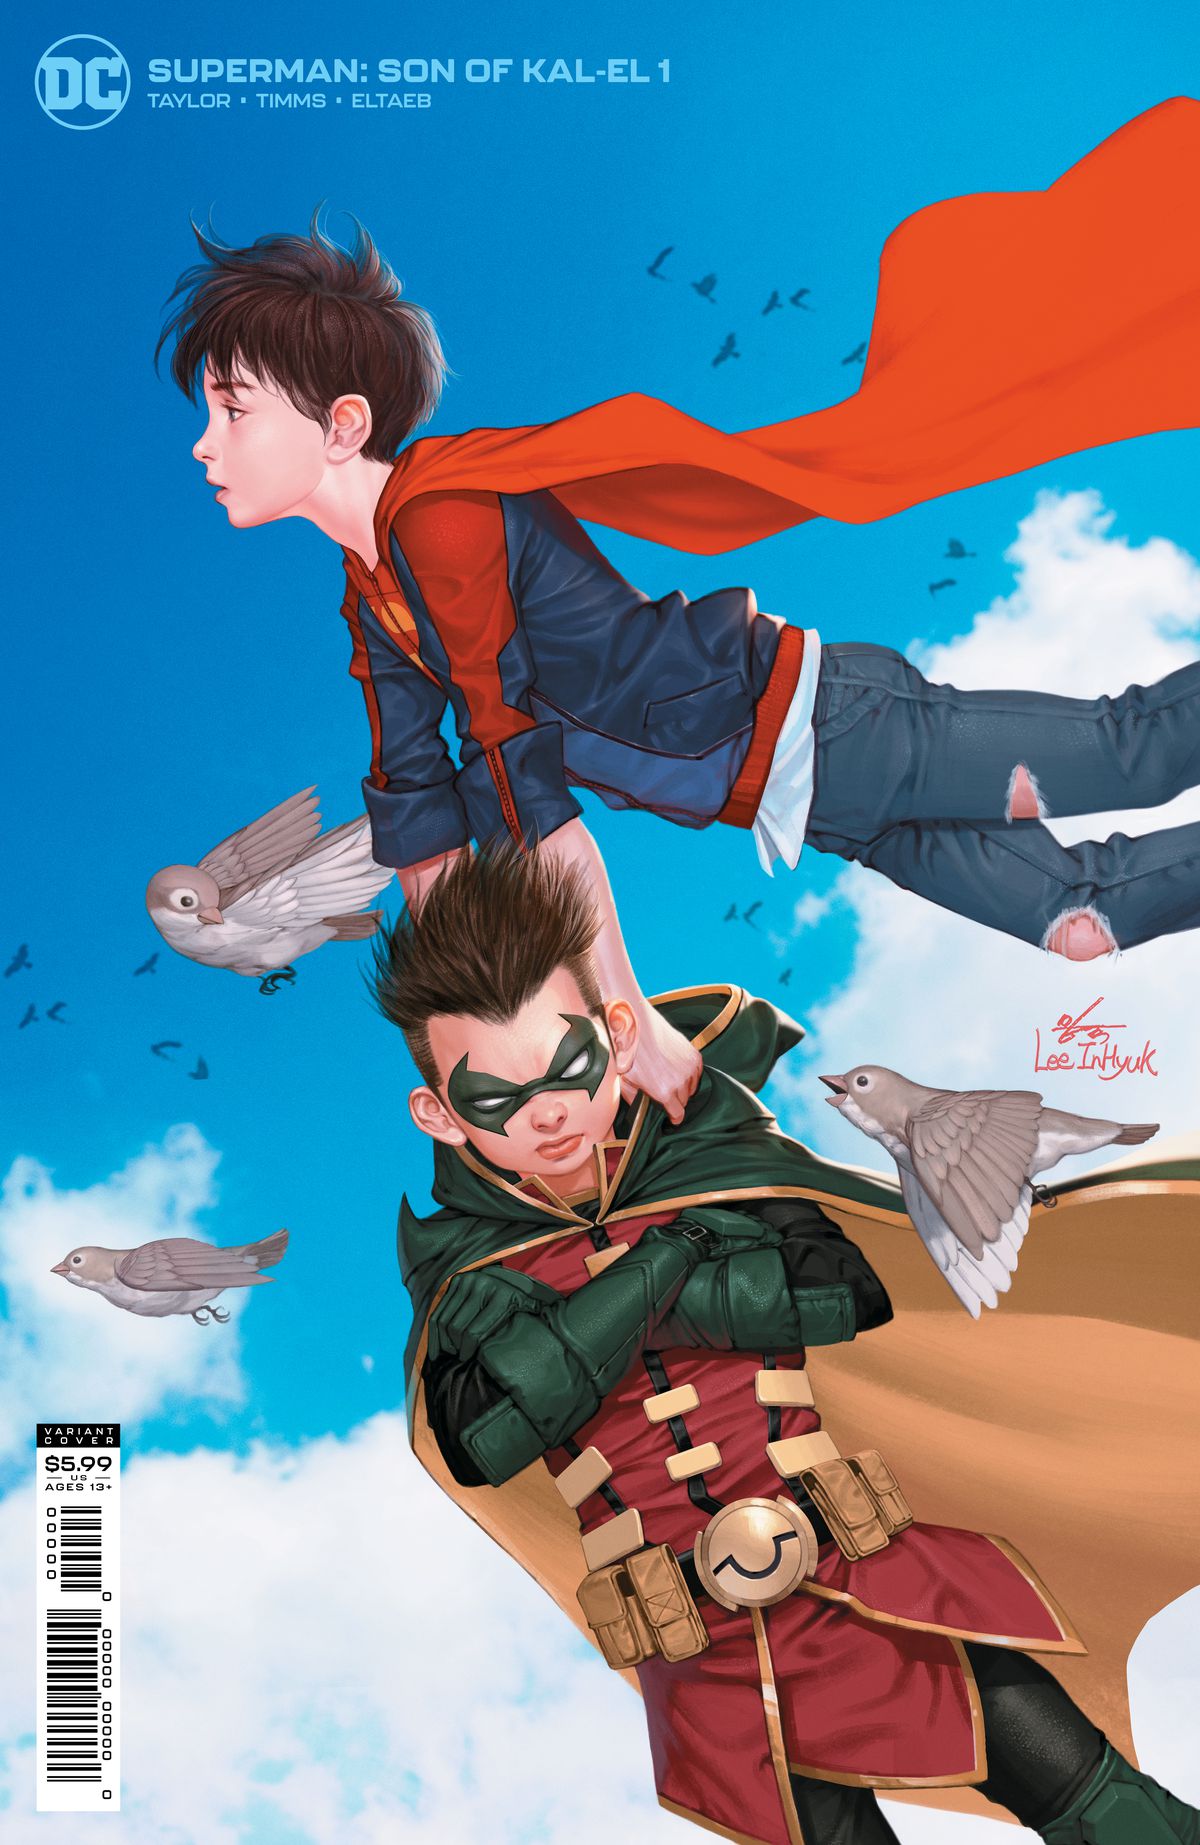 Jon Kent / Superbow trasporta uno scontroso Damian Wayne / Robin attraverso il cielo sulla copertina di Superman: Son of Kal-El # 1, DC Comics (2021). 